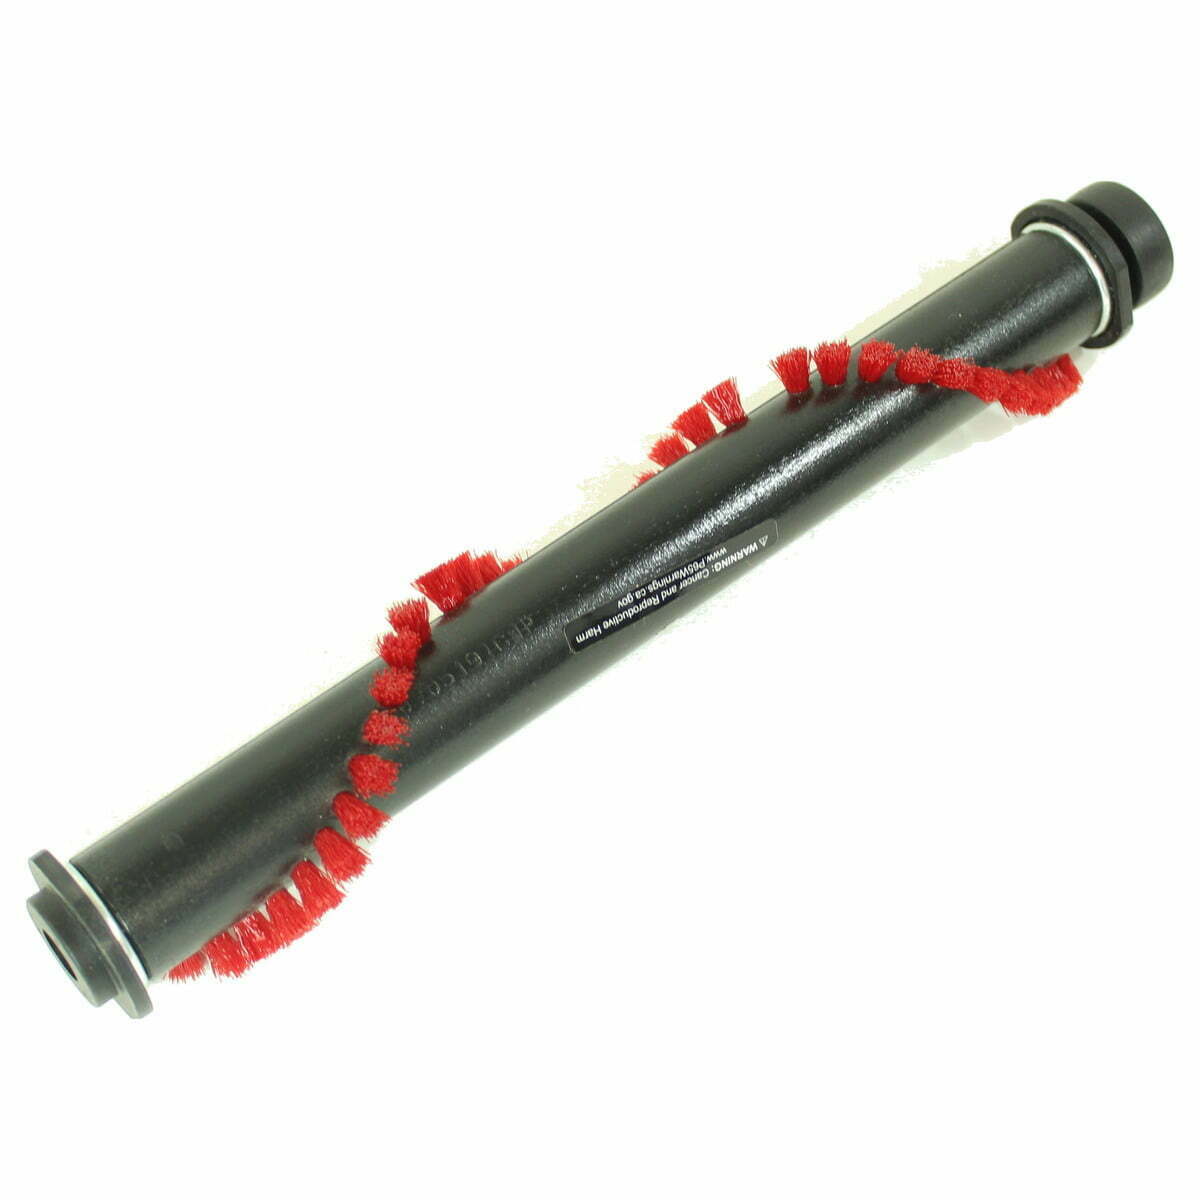 Oreck LW100 Magnesium Upright Vacuum Cleaner Brush Roll # 83020-01 